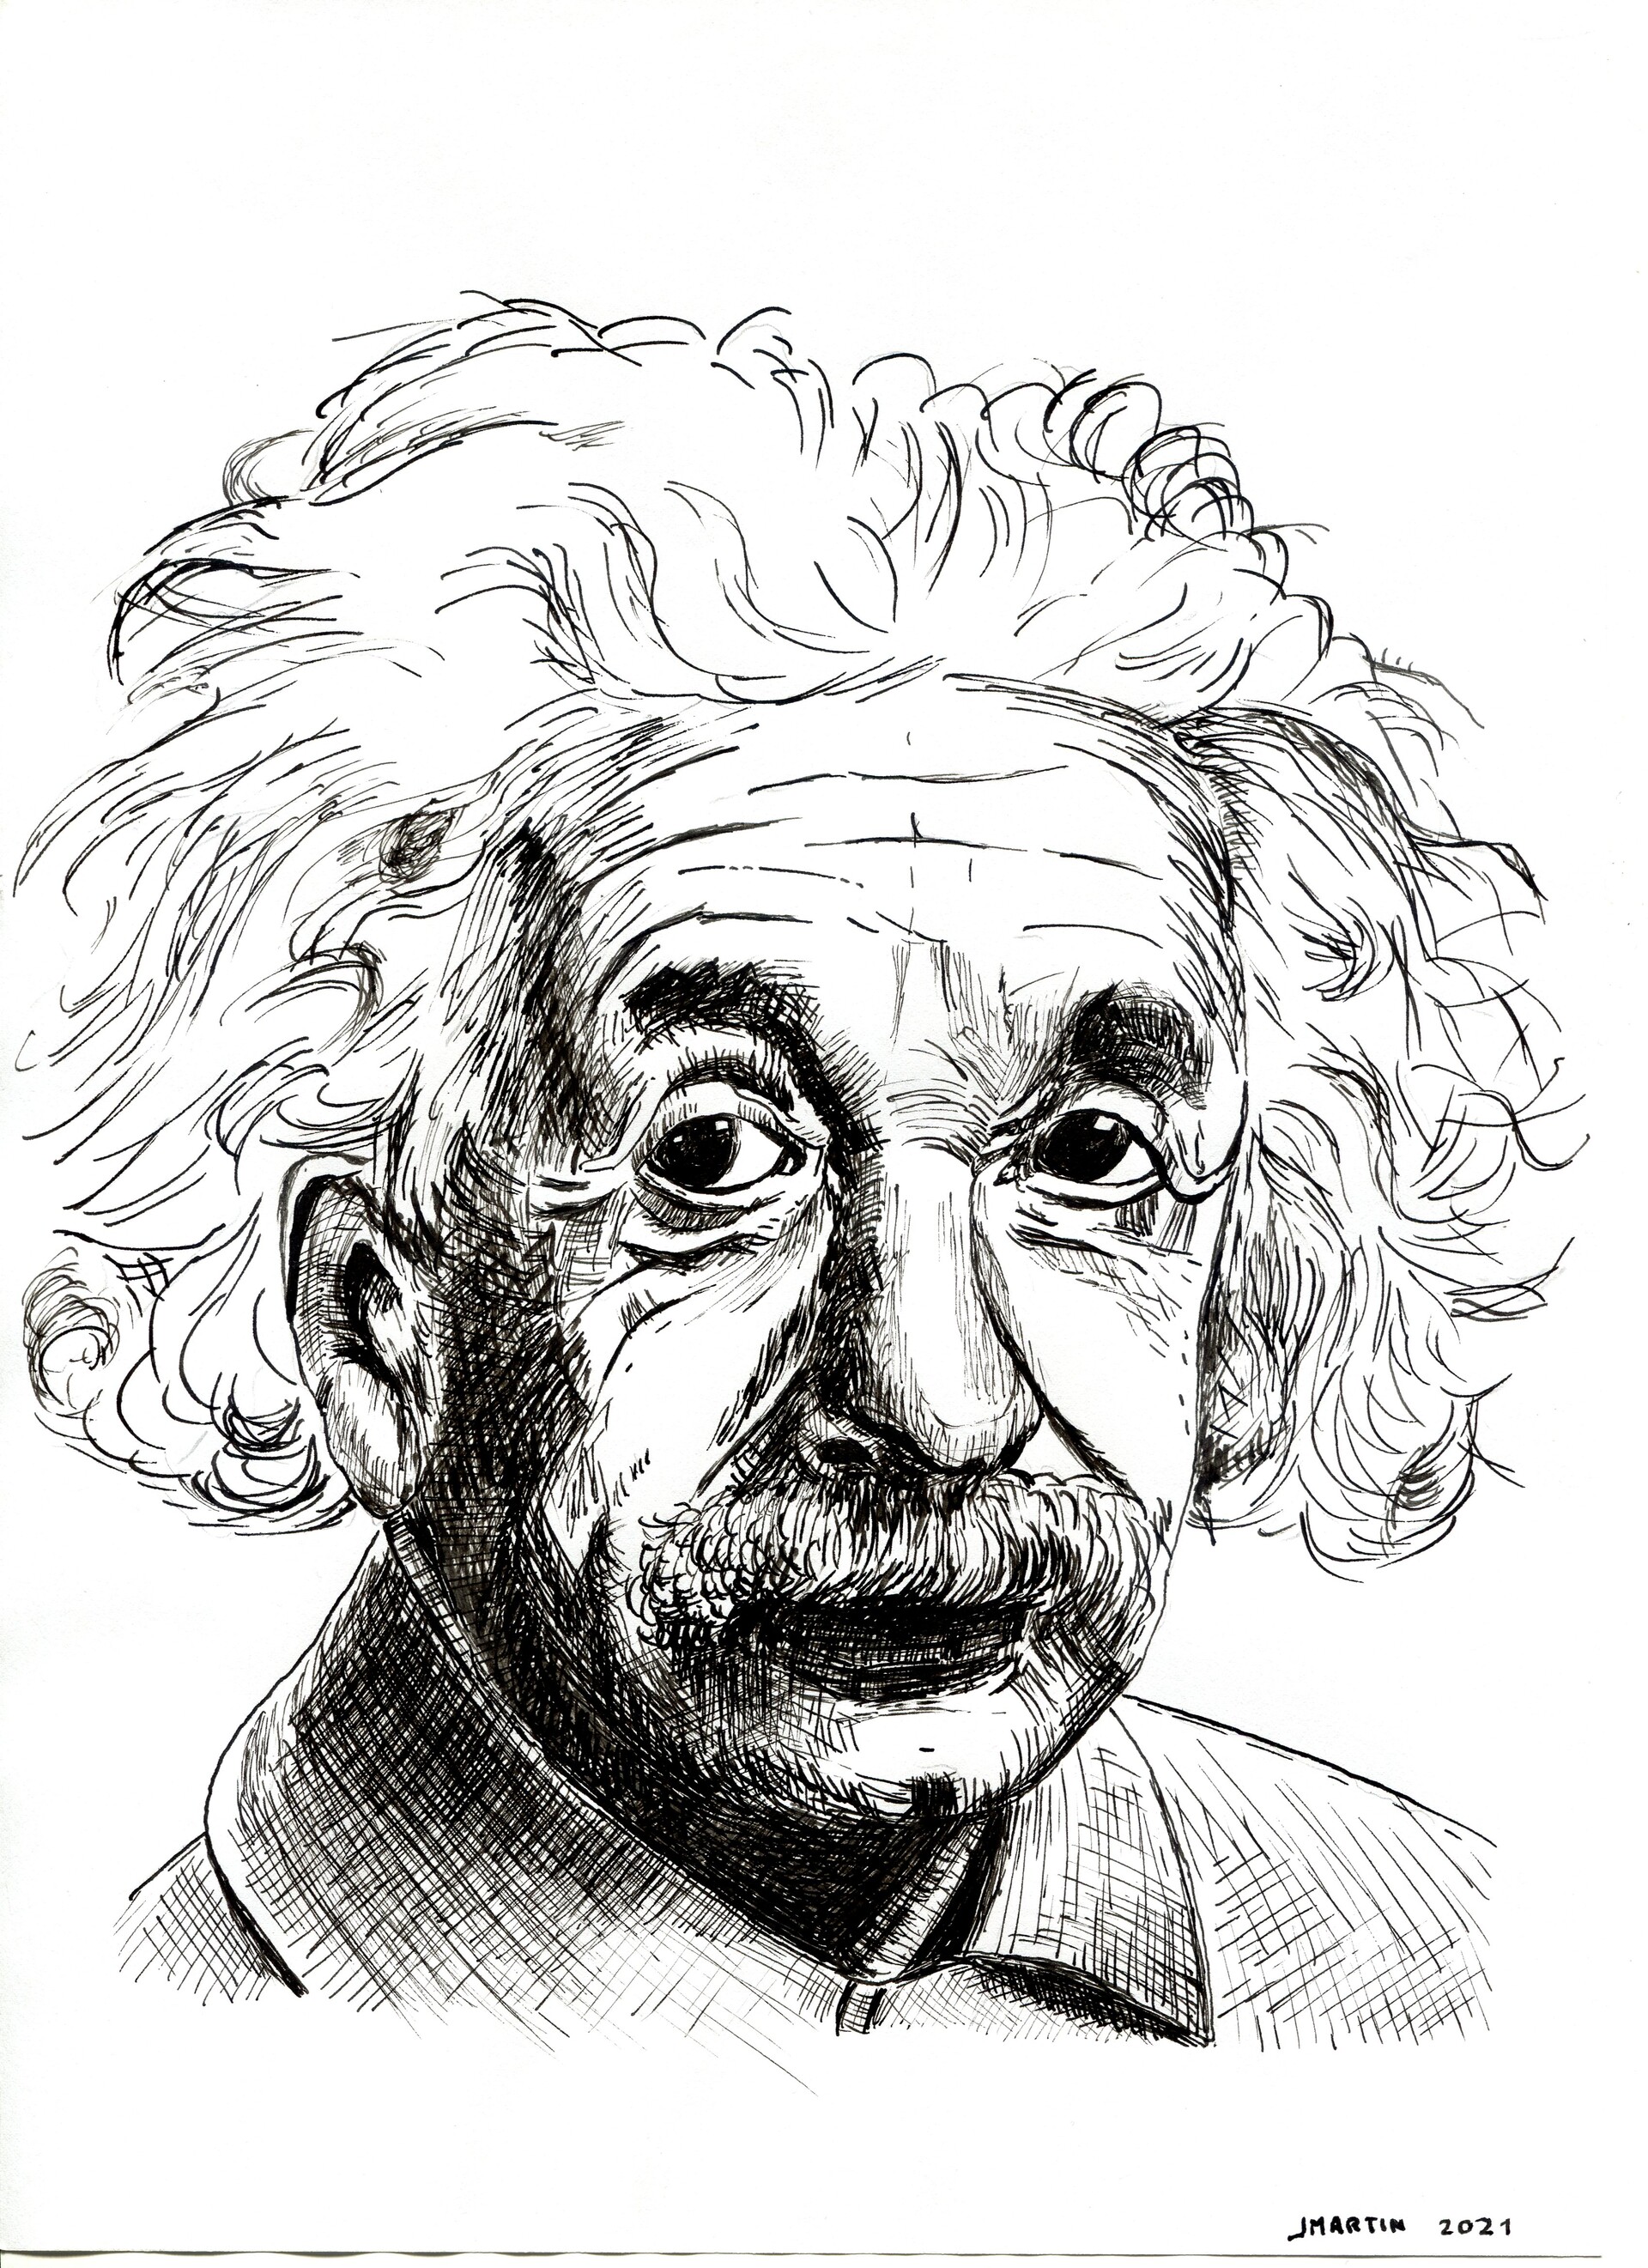 Albert Einstein drawing extreme details 